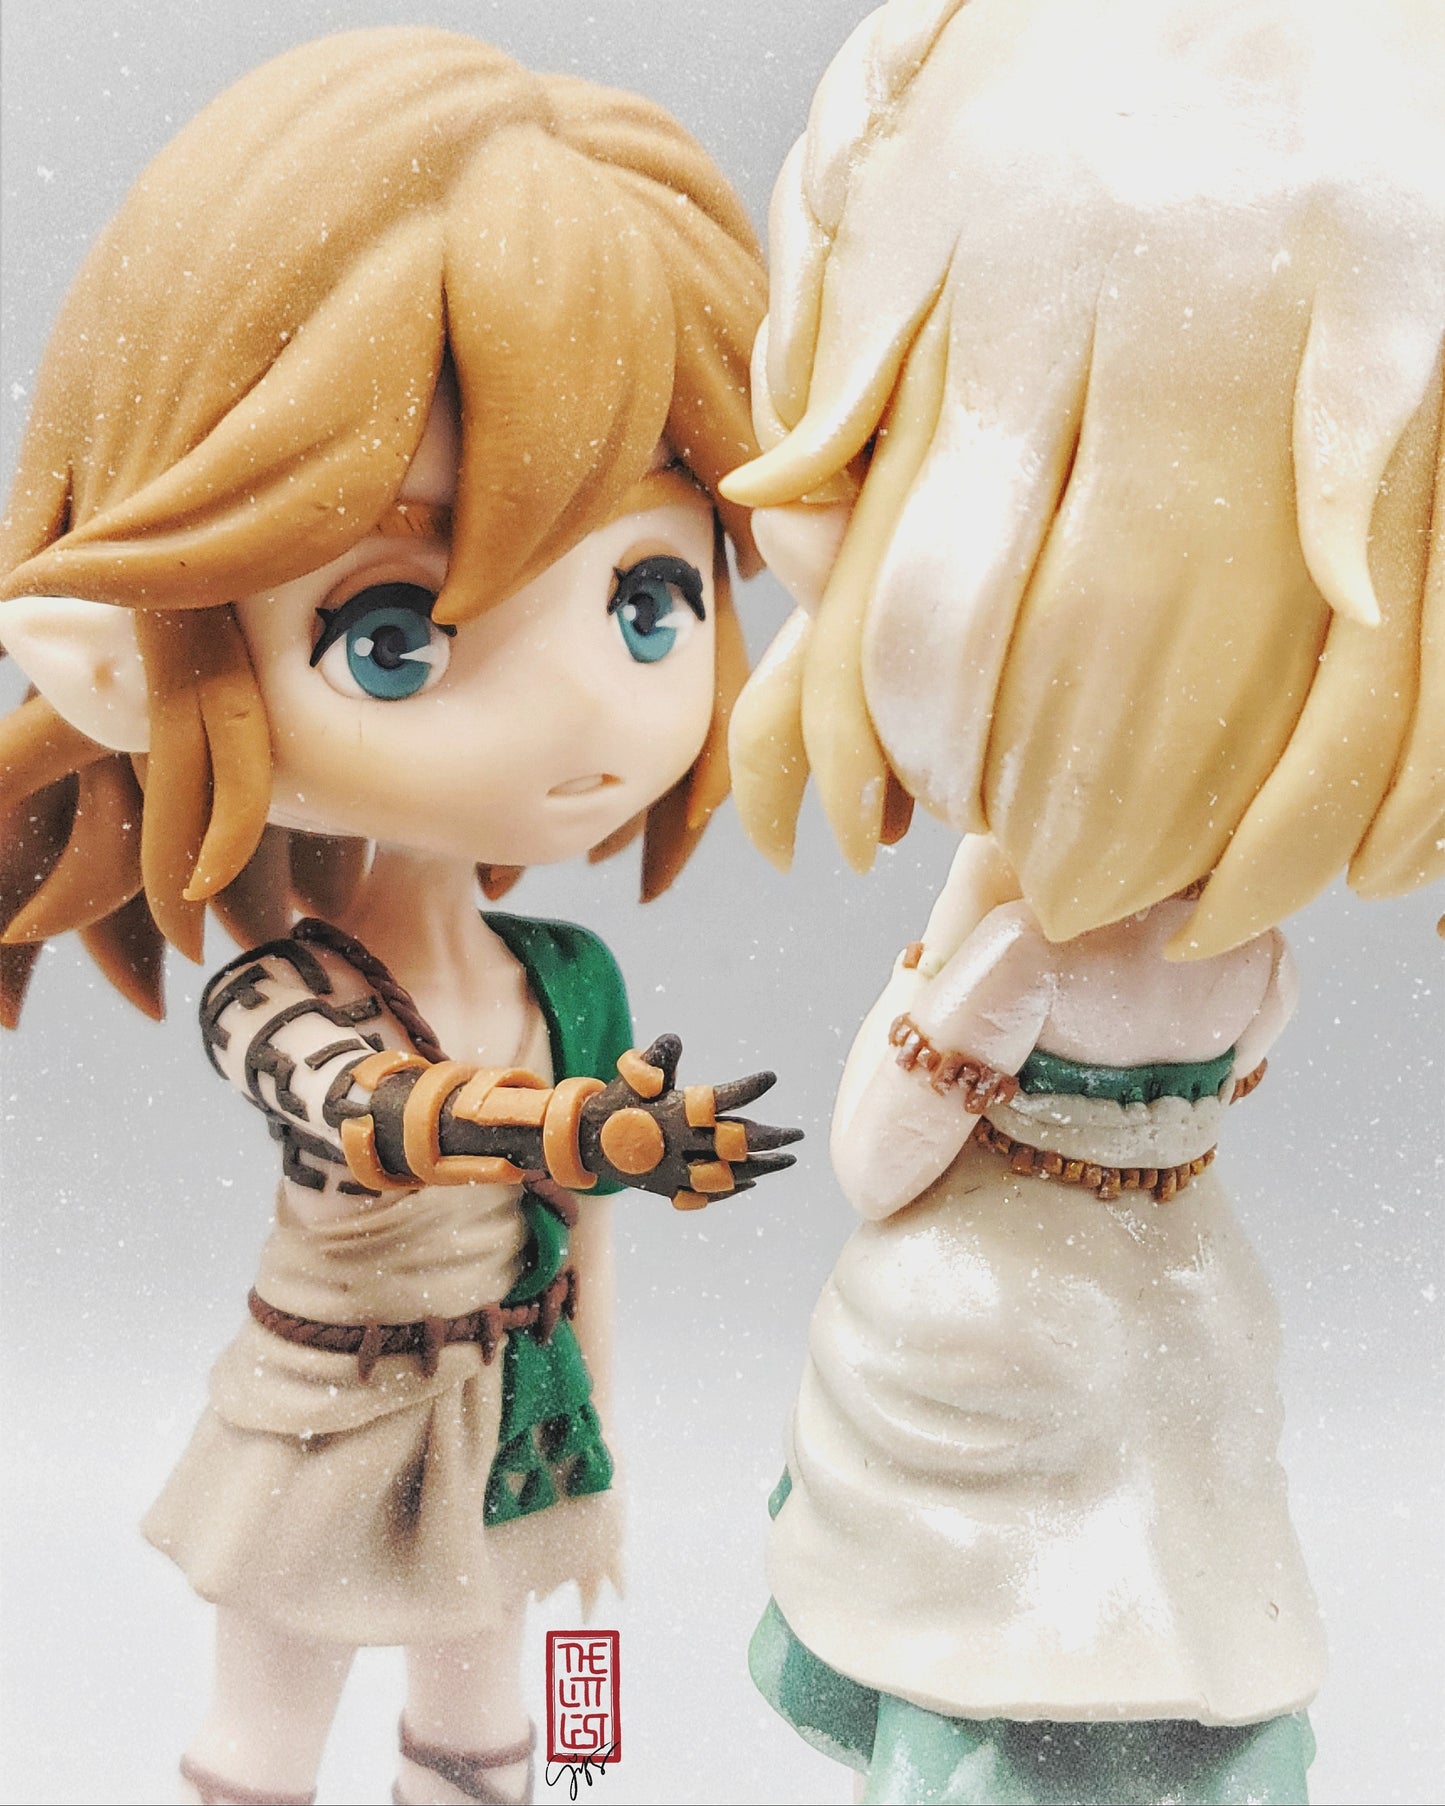 LoZ ToTK Link & Zelda Fan-made Chibi Figure